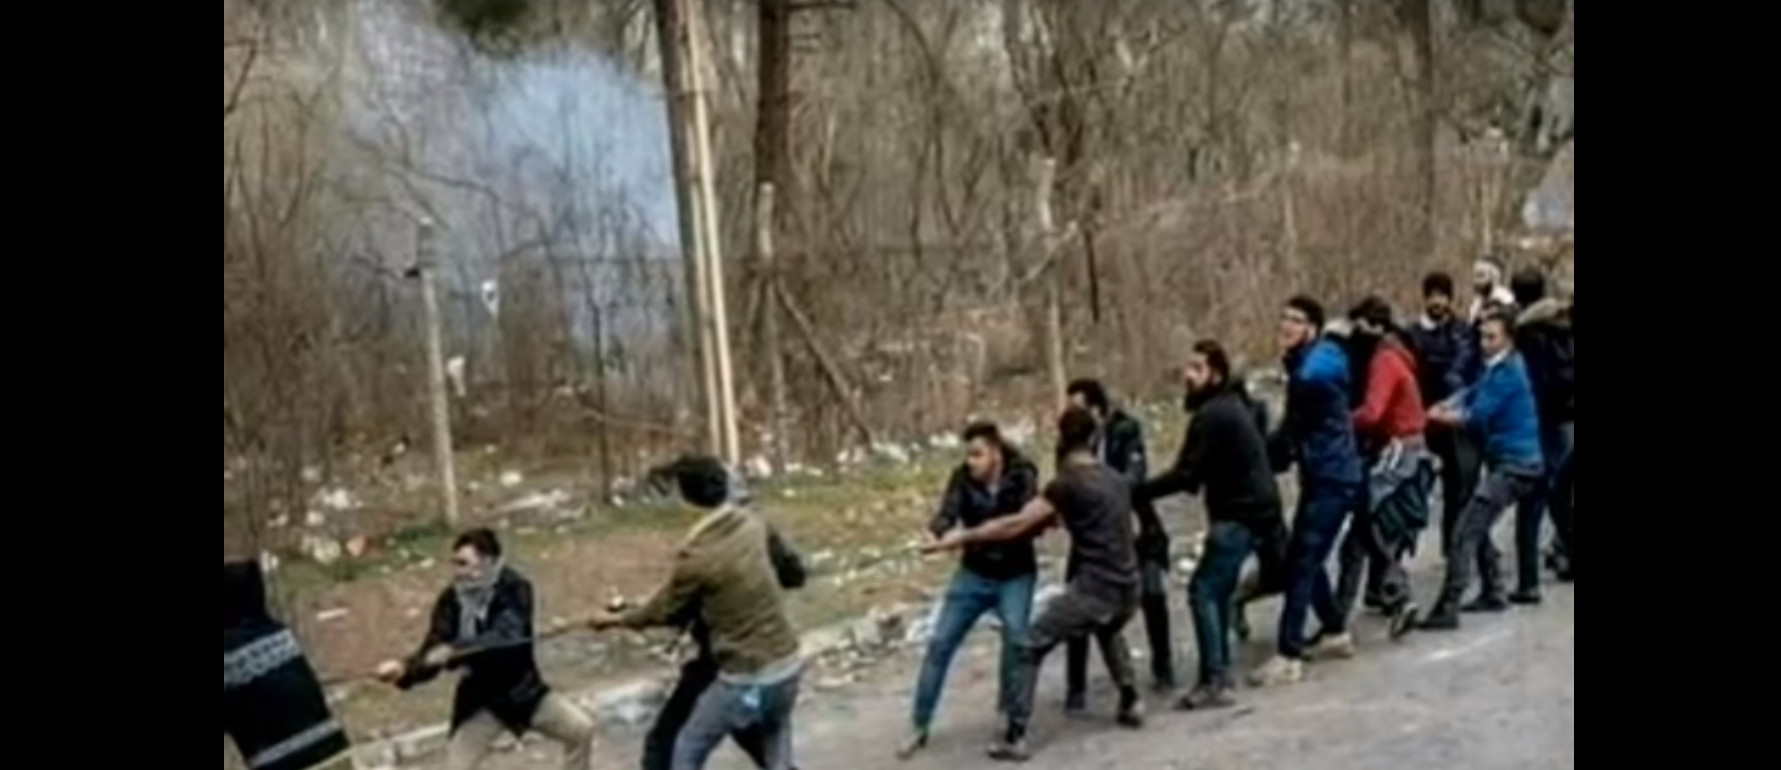 Έβρος τώρα: Οι Τούρκοι “ξεφεύγουν” – Μετανάστες βάζουν φωτιές, πετούν χημικά